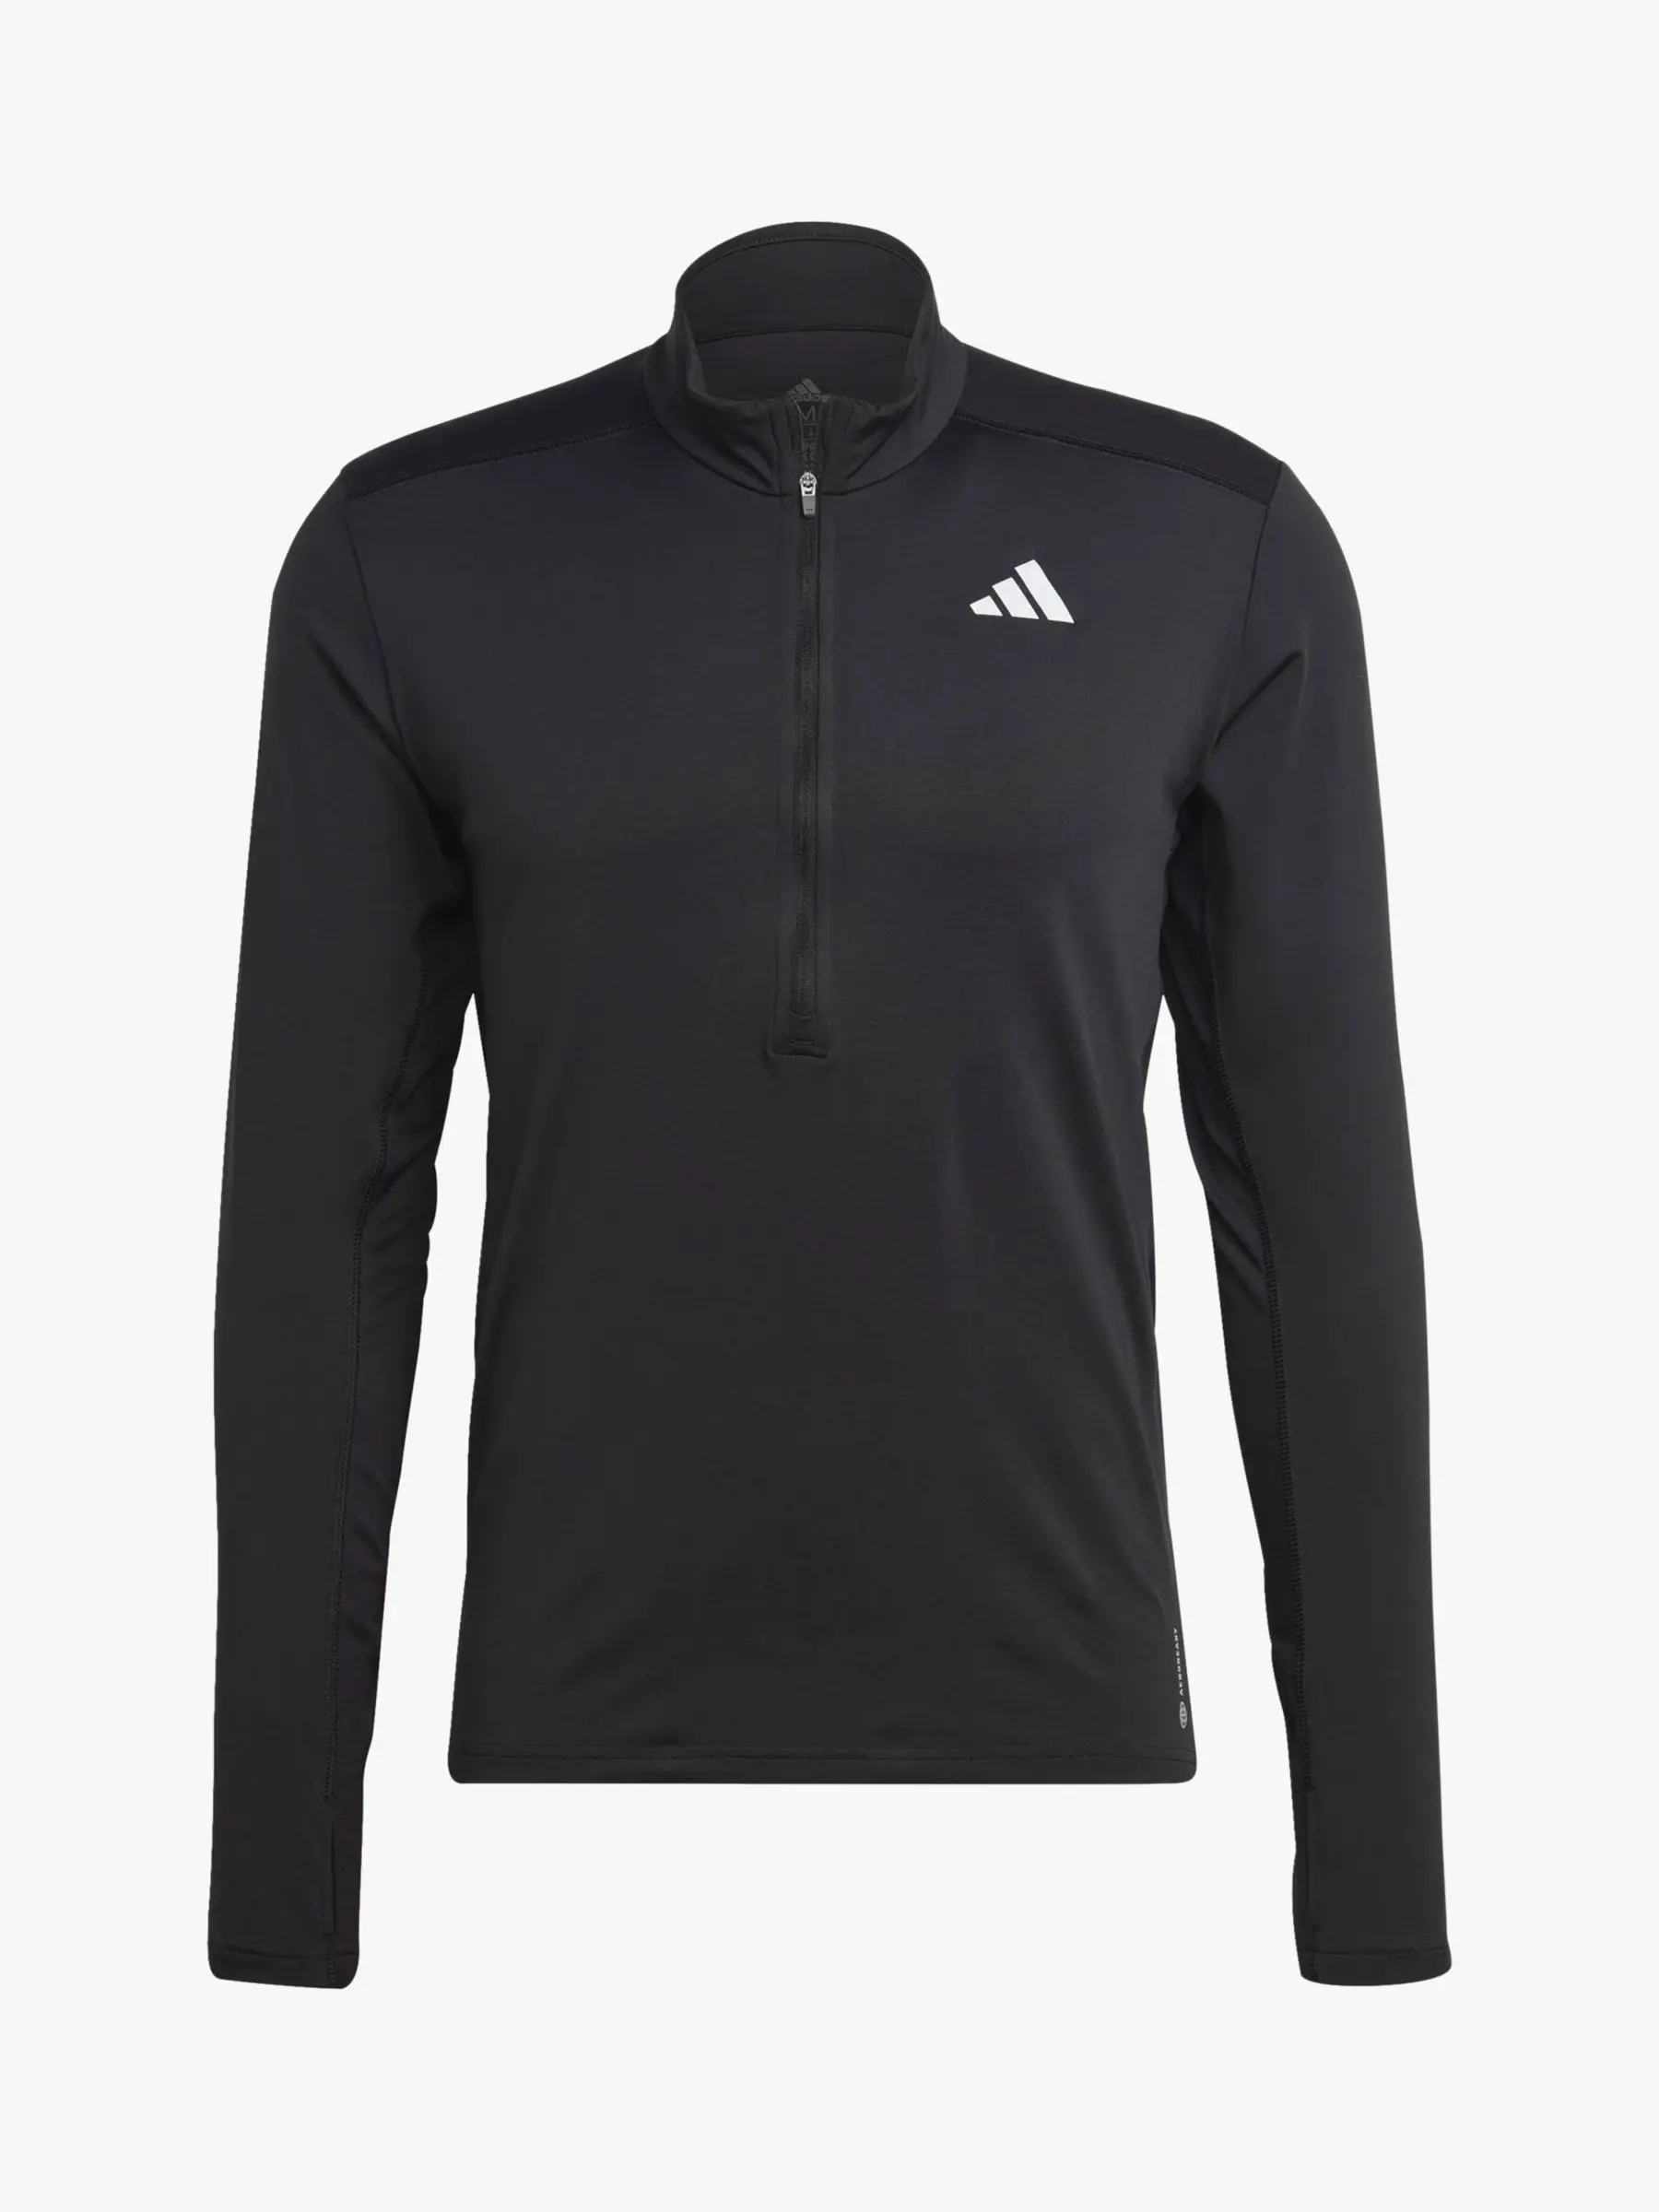 Adidas Performance Own The Run Shirt - Heren - Zwart - L